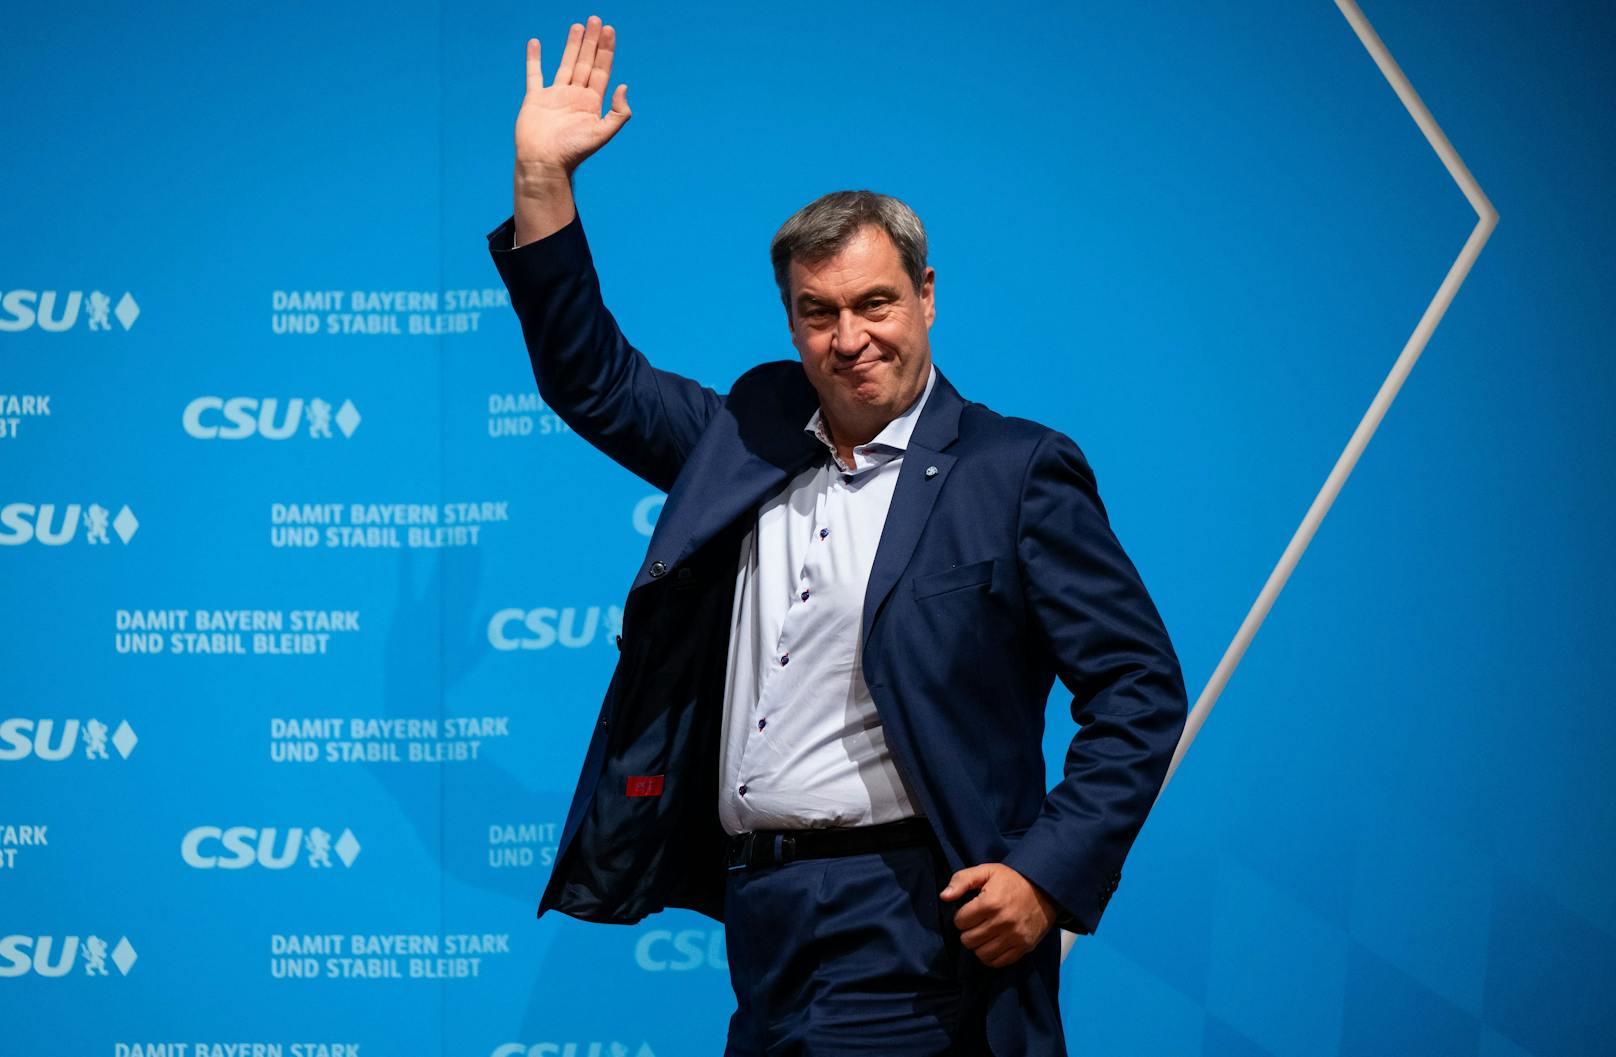 Landtagswahlen in Bayern – Söder gewinnt, AfD bei 15%